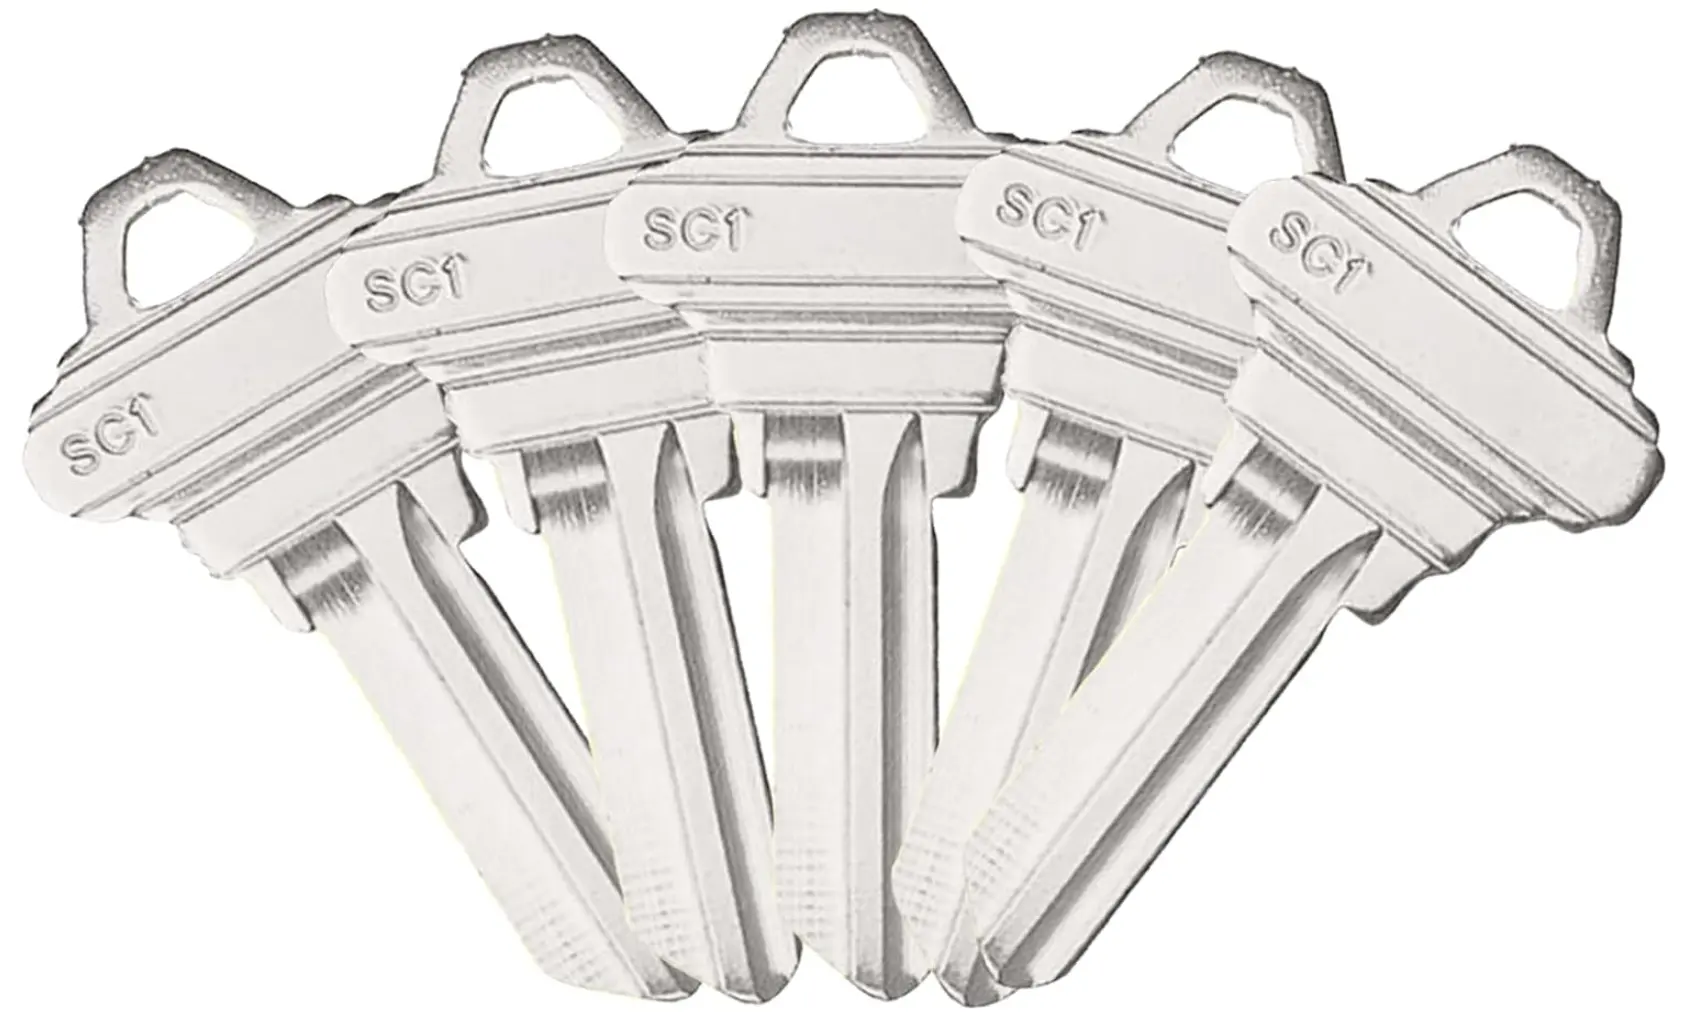 SC1 boş anahtar boşlukları kesilmemiş bakır yapıları kesme için boş anahtarlar